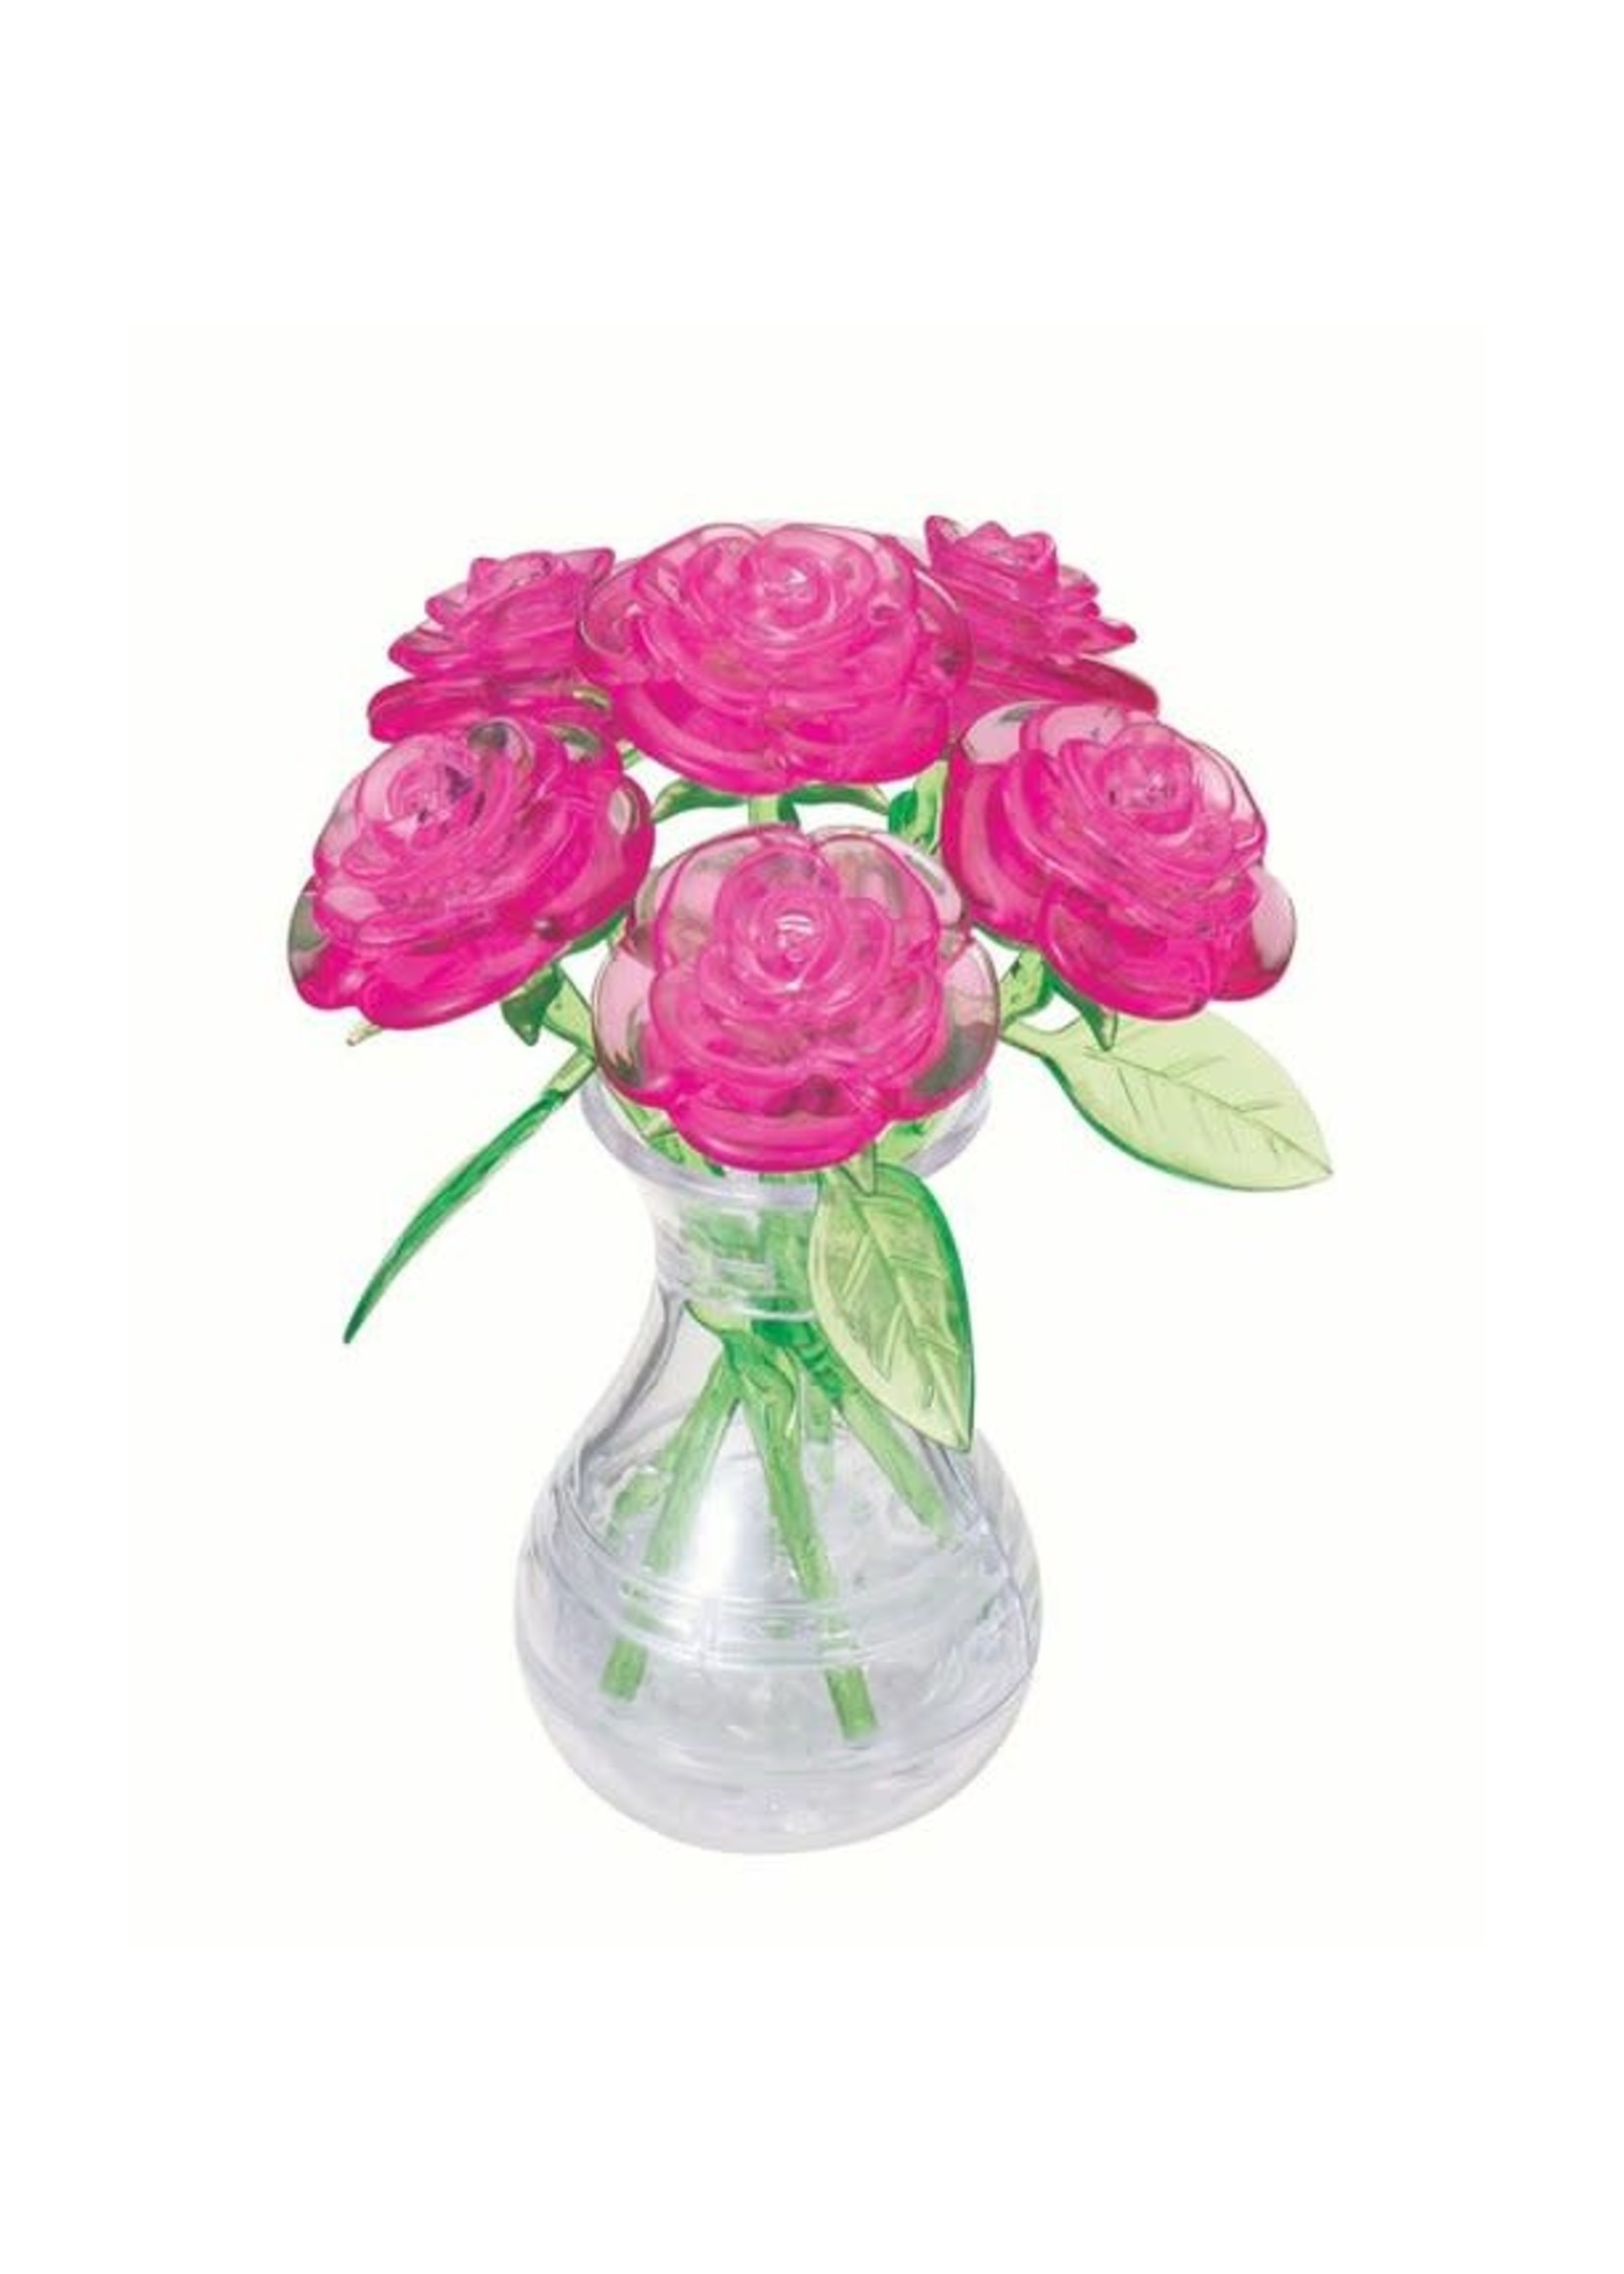 3D Crystal Pink Rose in Vase